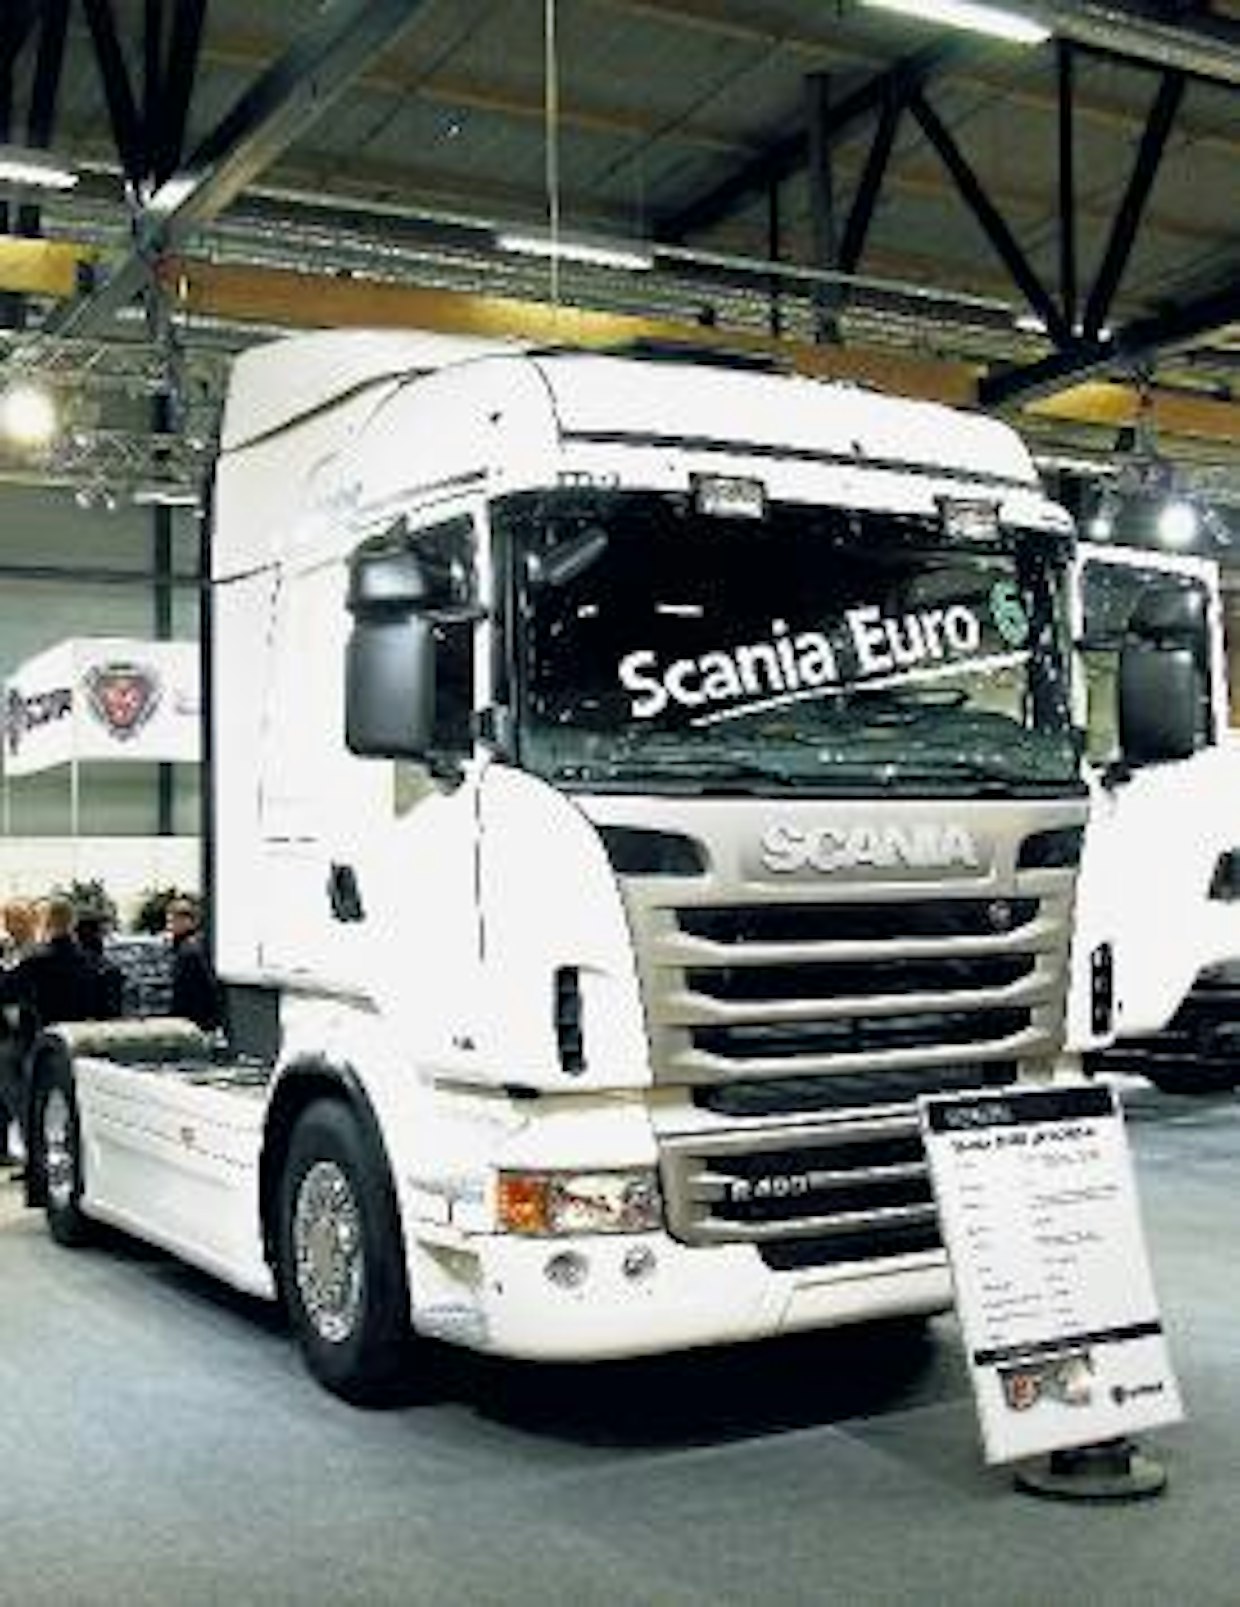 Scanian 13-litraiset 440/480 hv moottorit ovat nyt Euro 6 -normit vaatimukset täyttäviä. Päästöarvot putoavat edeltävään Euro 5 -tasoon nähden reilusti. Uutuutena esiteltiin myös mahdollisuus saada levyjarrut ja ilmajousitus napavälitteisen telivedon yhteyteen.